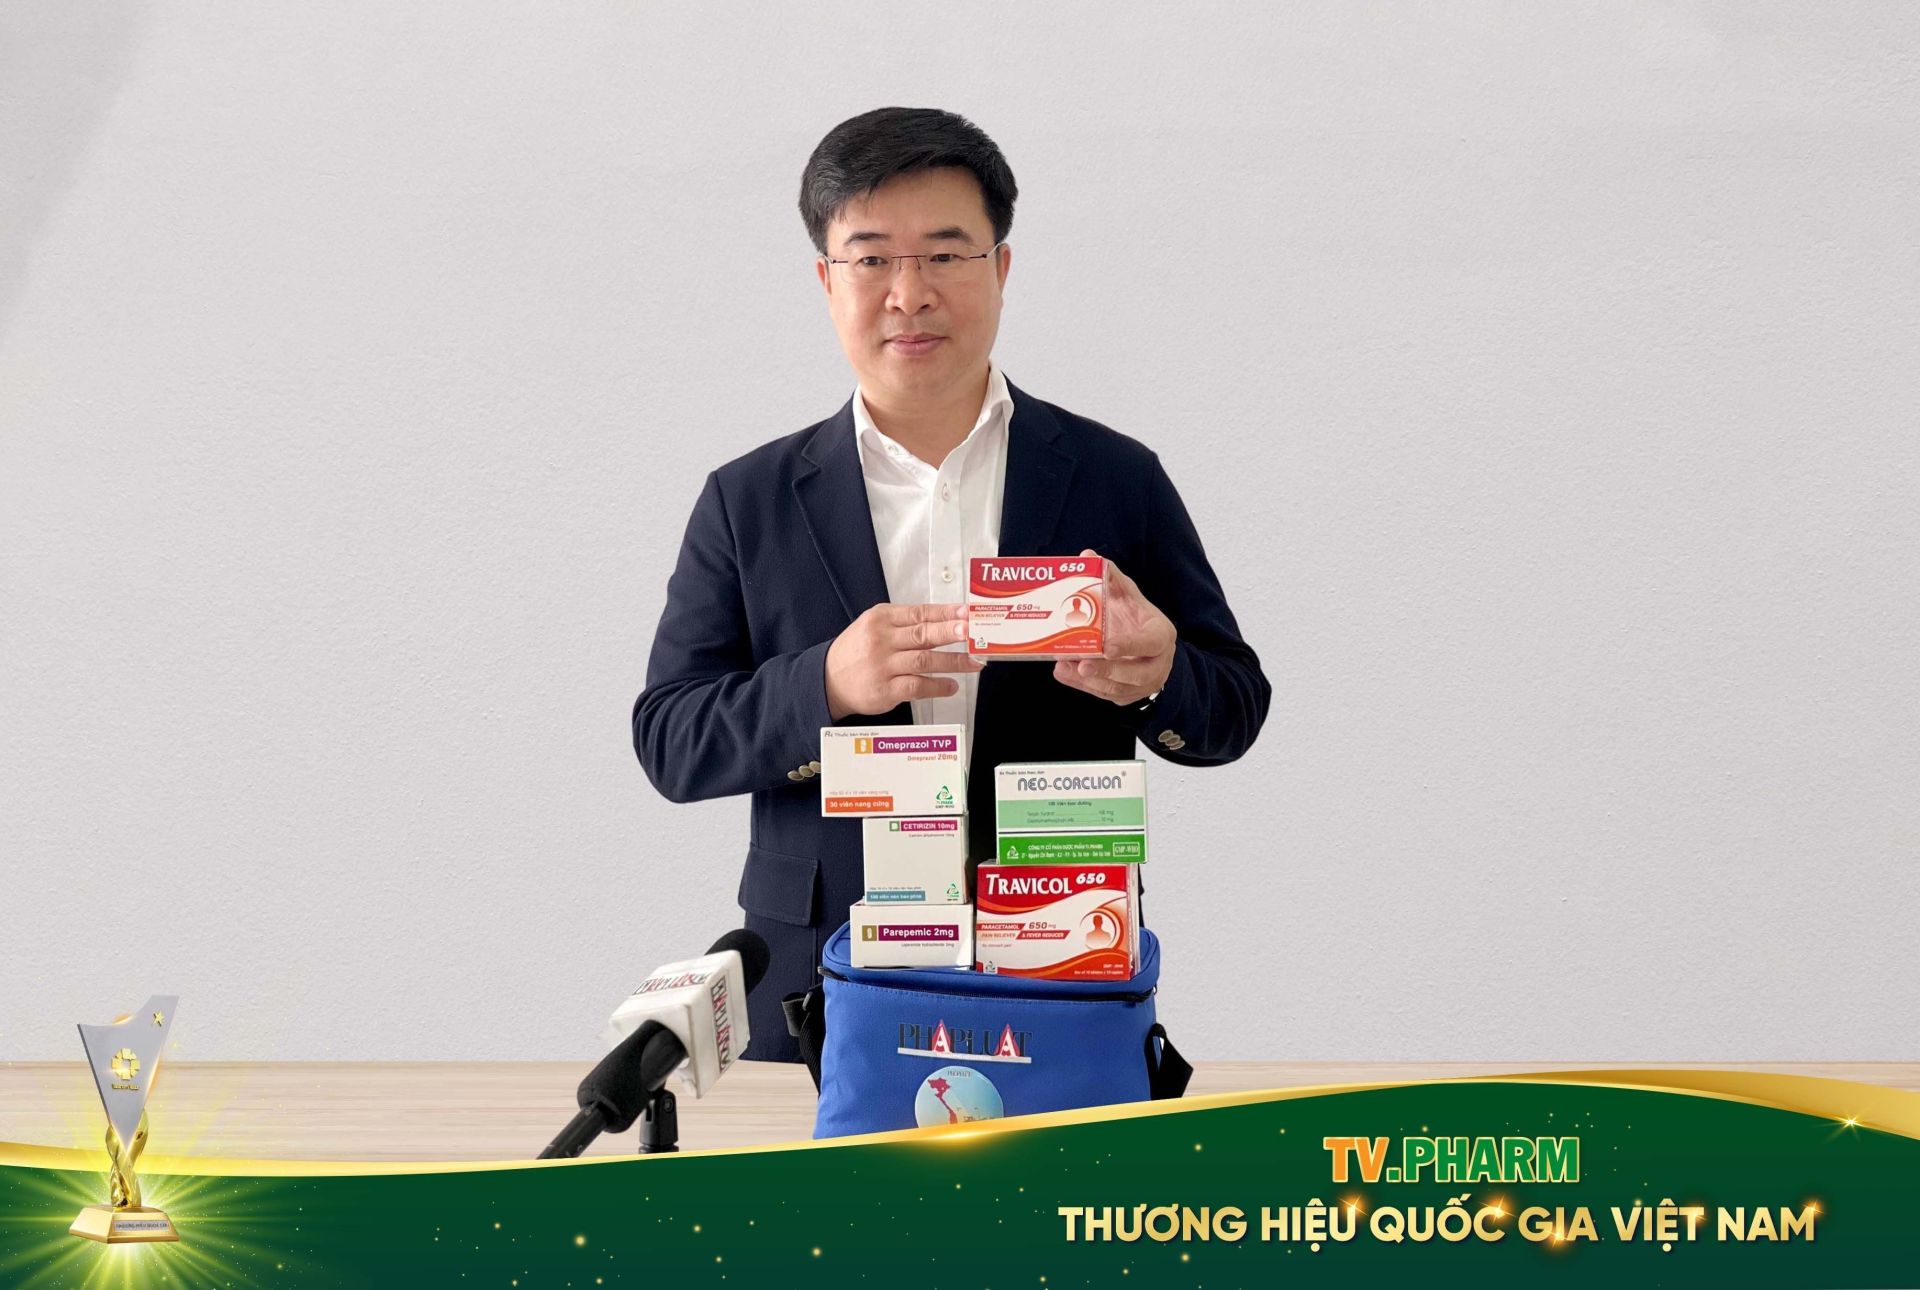 Ông Hà Ngọc Sơn, Chủ tịch Hội đồng quản trị Tập đoàn AIKYA, Tổng Giám đốc Công ty Cổ phần Dược phẩm TV.PHARM giới thiệu bộ sản phẩm thuốc thiết yếu dành cho ngư dân.